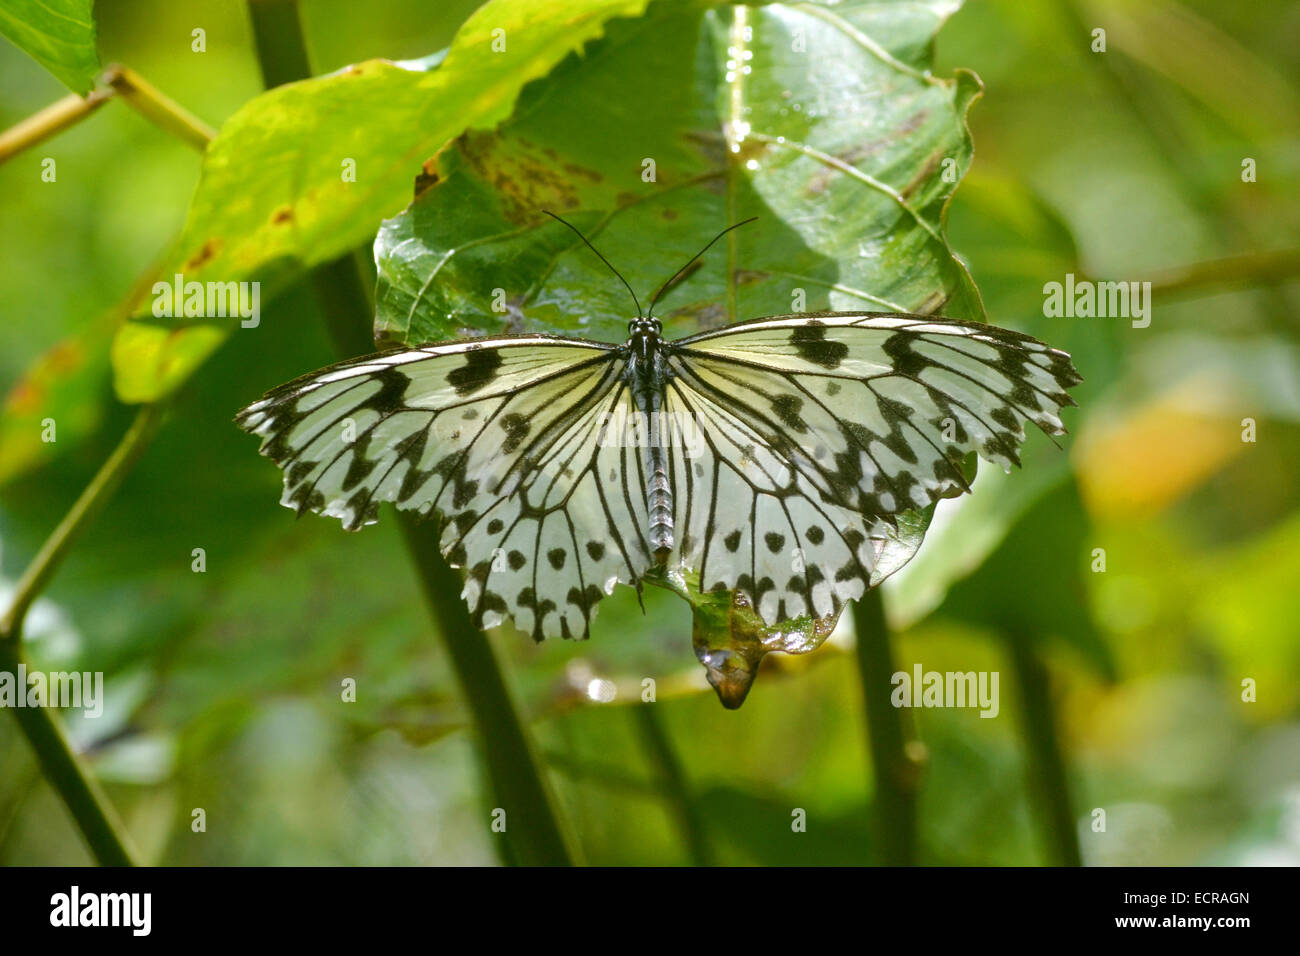 Boda blanca Mariposa, esta mariposa es utilizado en Asia para volar alrededor de la pareja en las bodas! Foto de stock